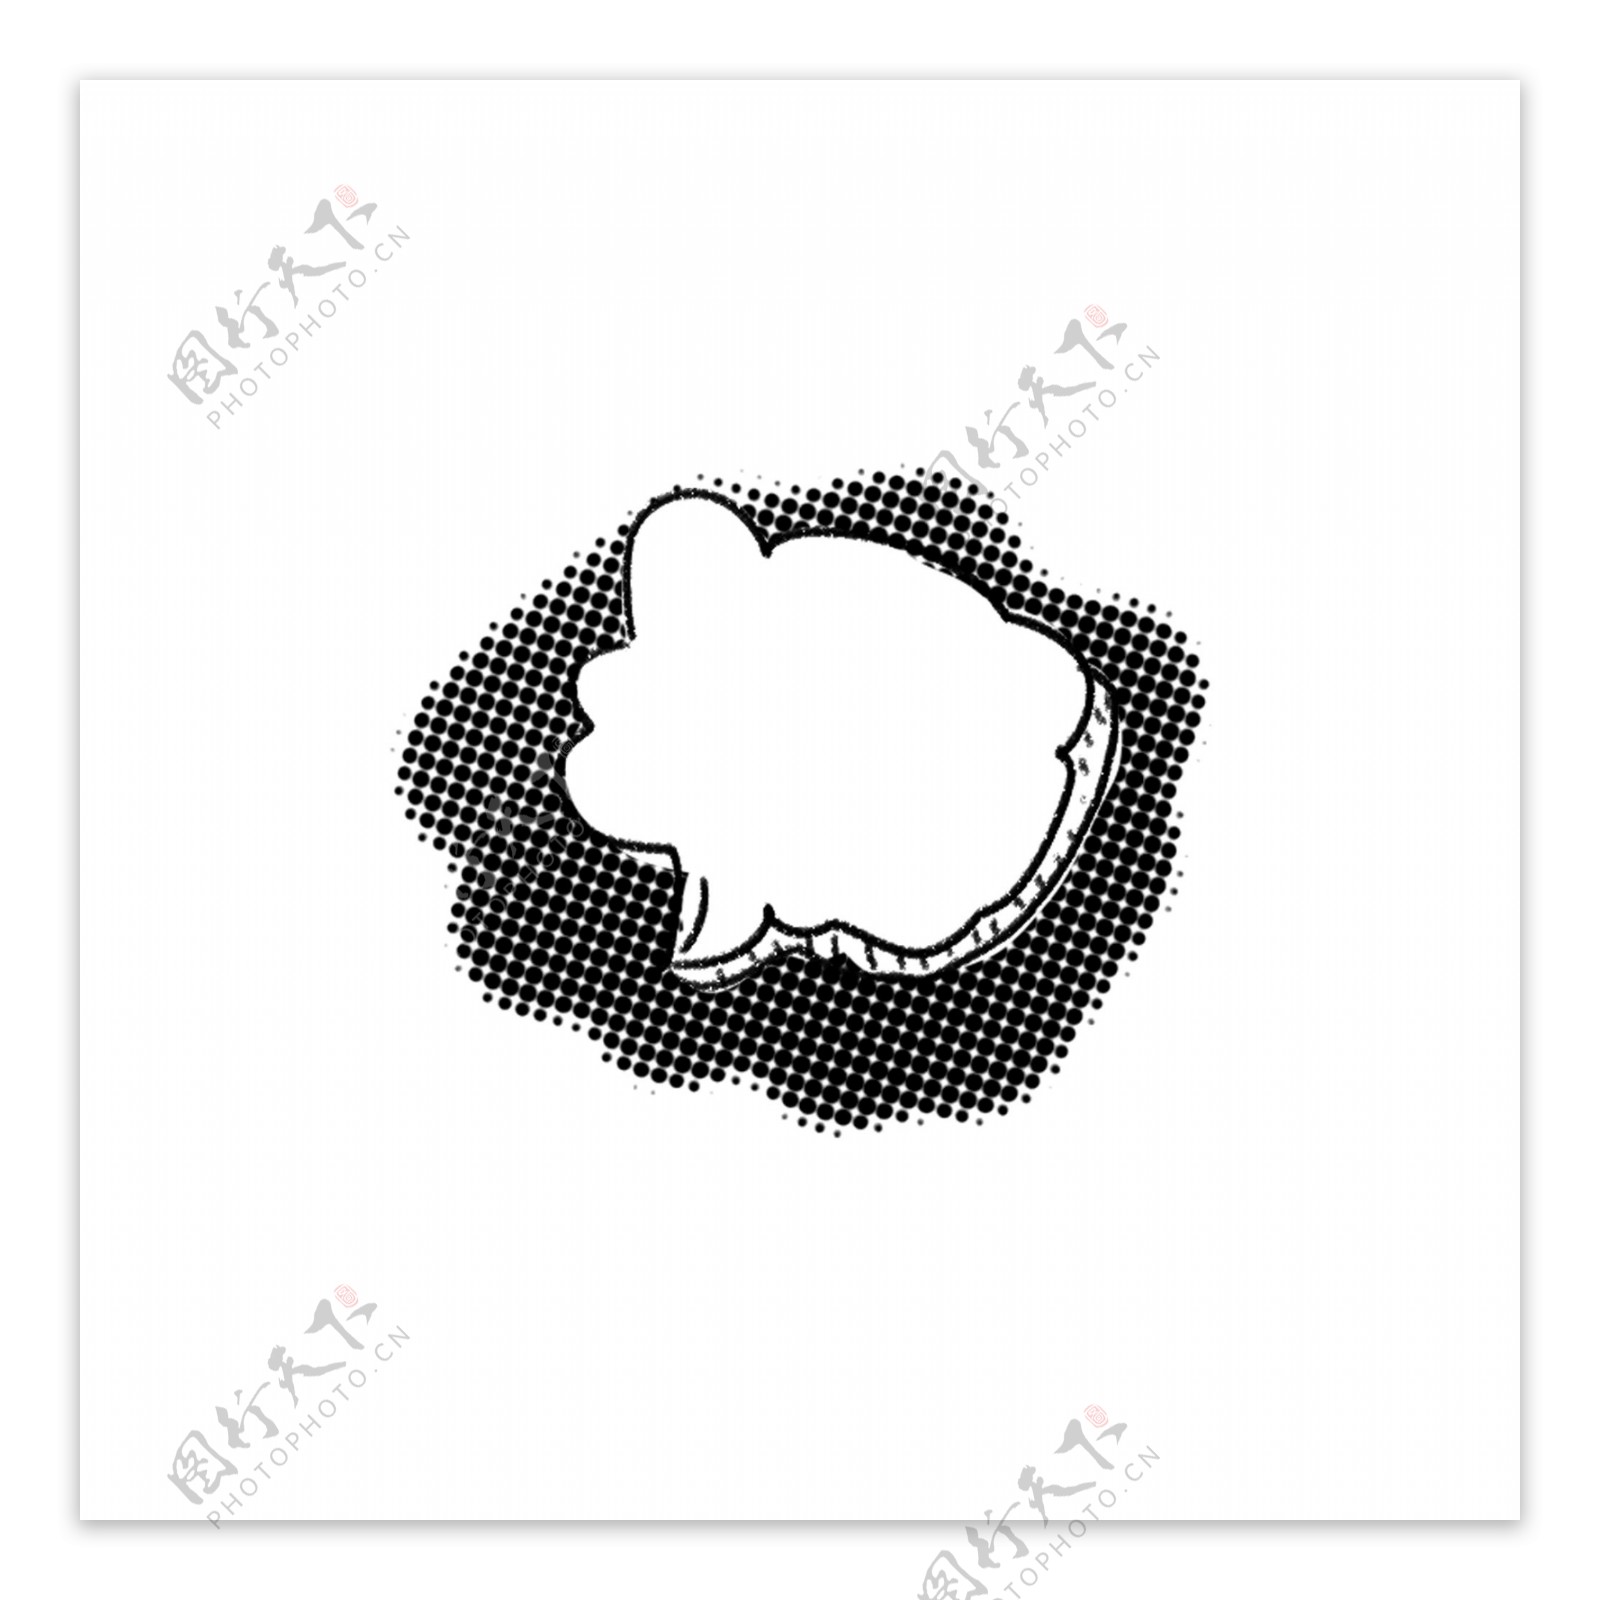 爆炸云对话框会话气泡漫画简笔元素可商用